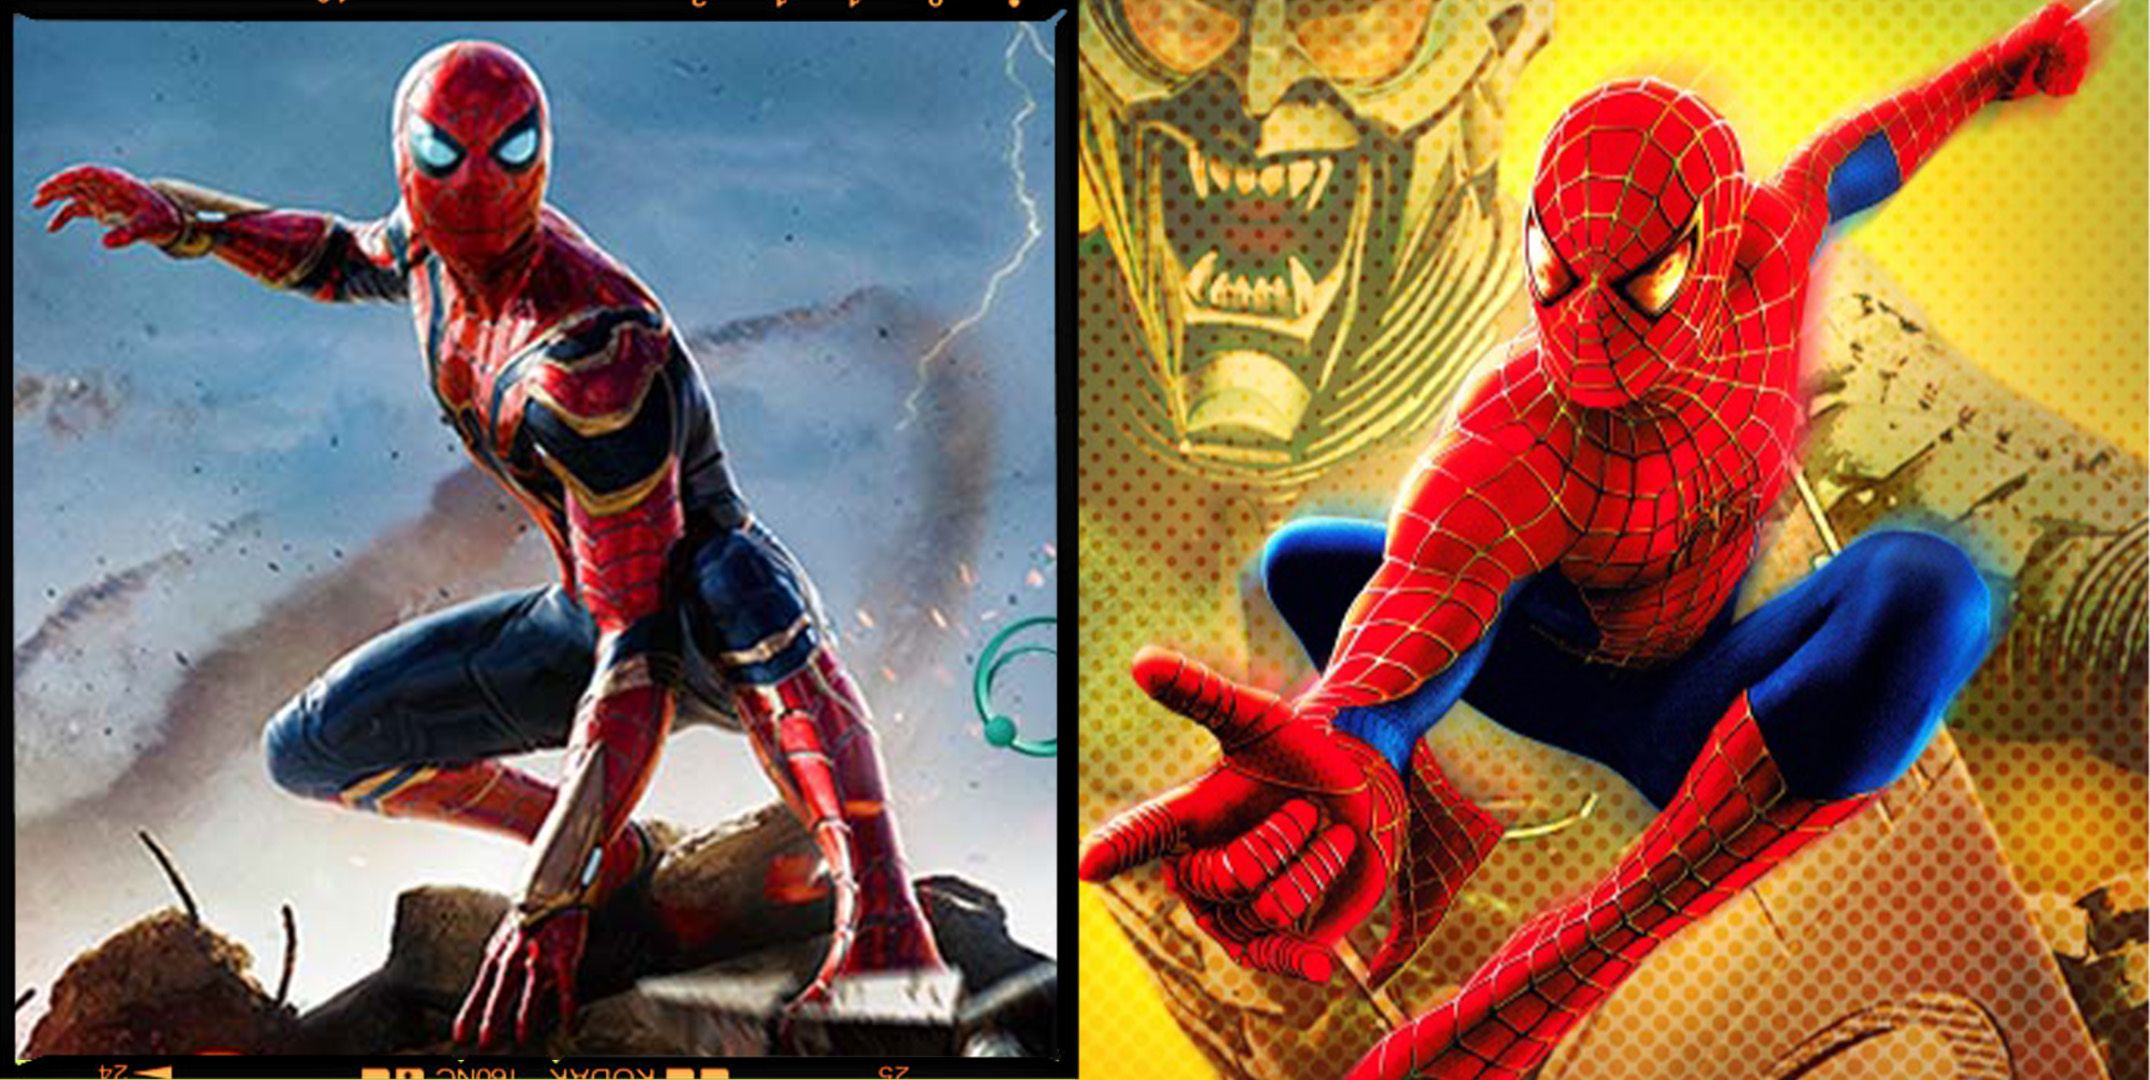 Spiderman 1 Movie Online vs whitezilla